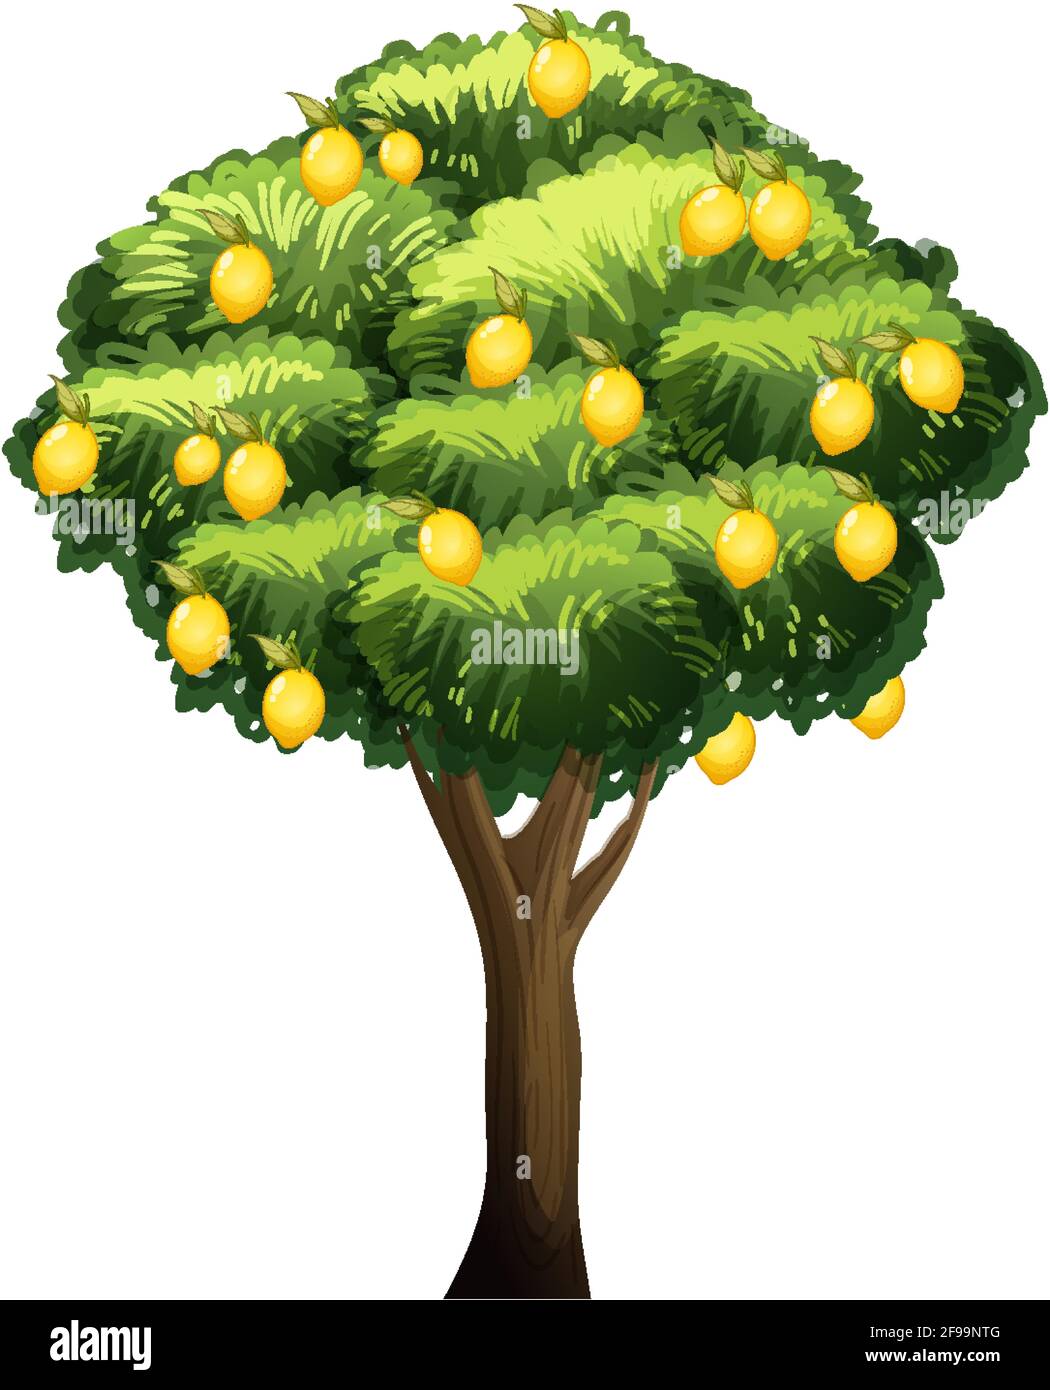 Lemon tree isolated on white background illustration Stock Vector Image ...